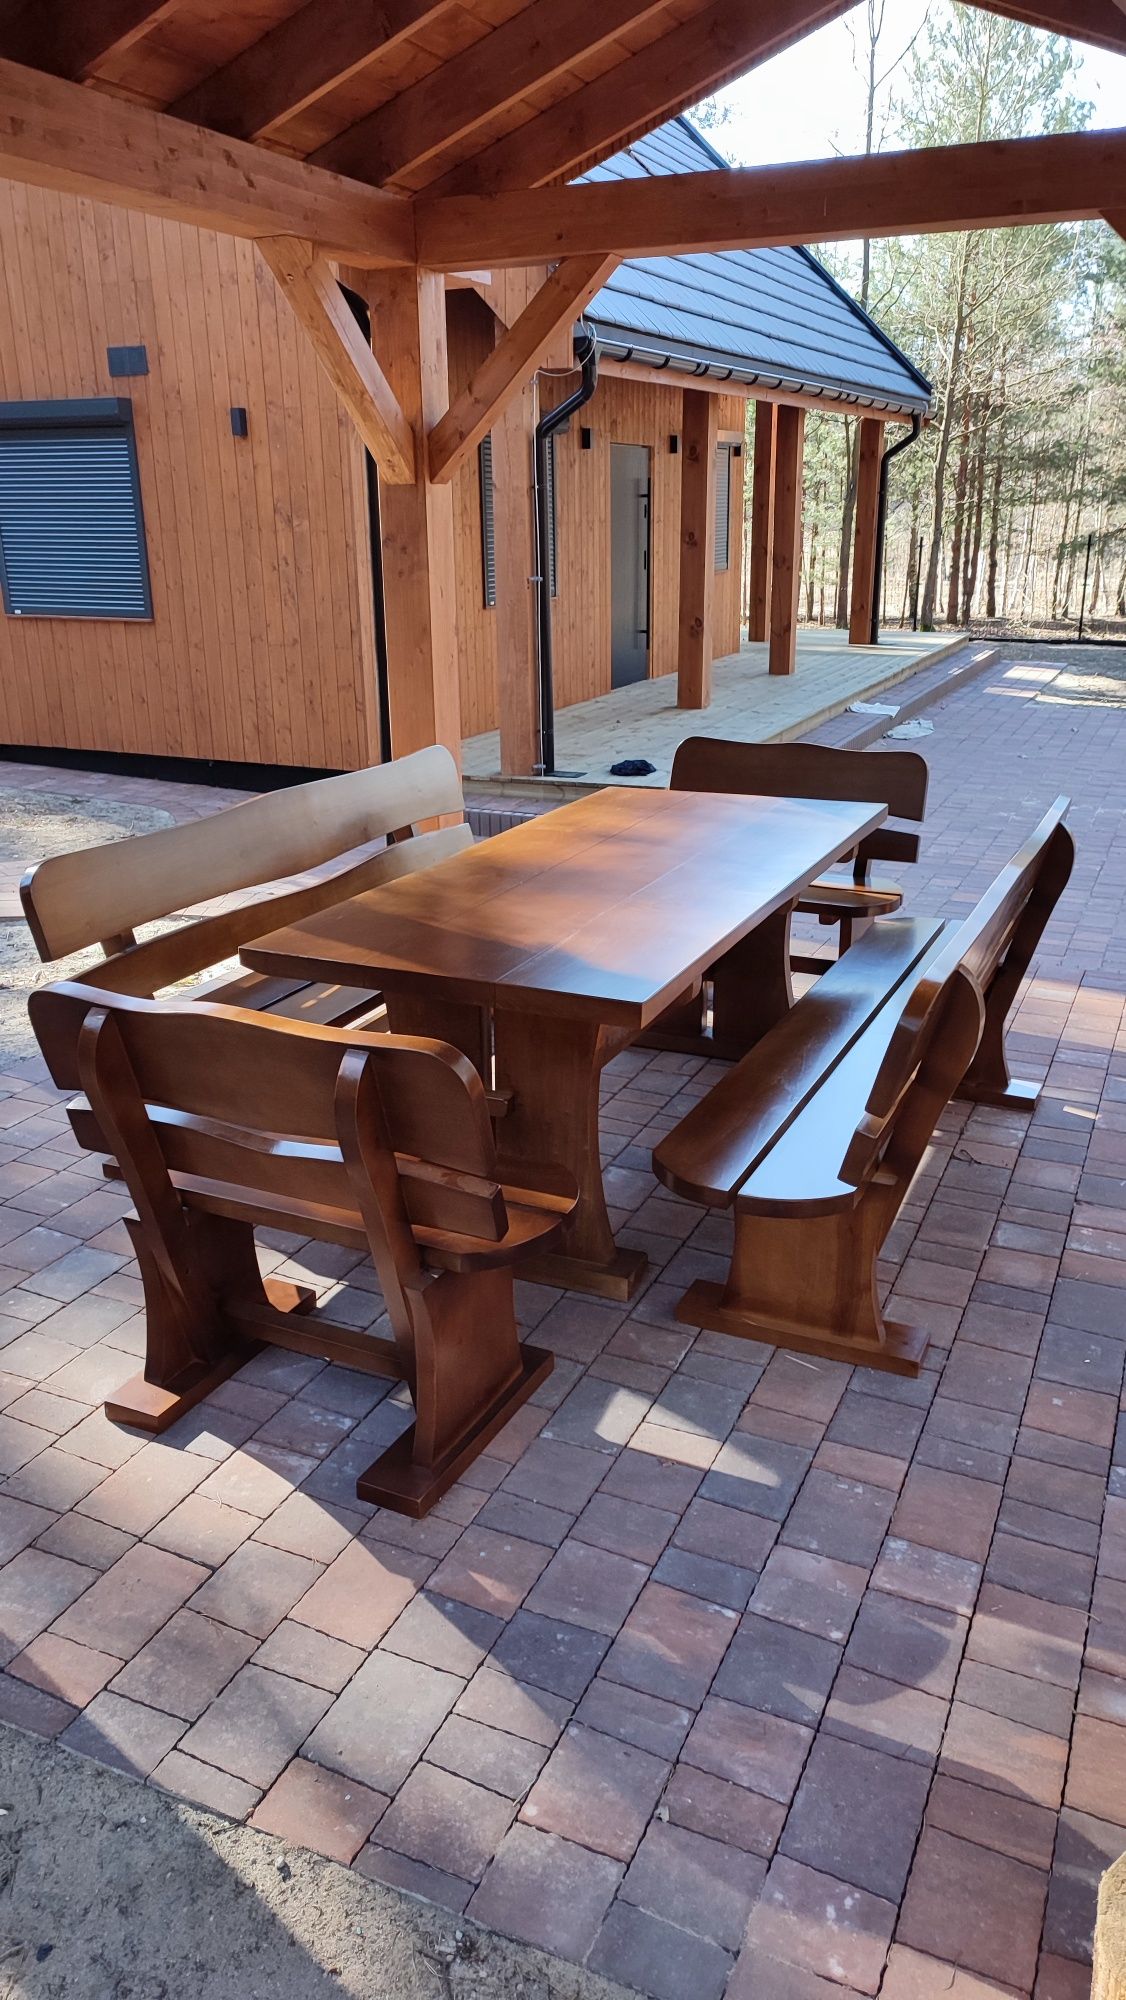 Meble ogrodowe stół ławki krzesła dla 6-16 osób altana parasol ogród